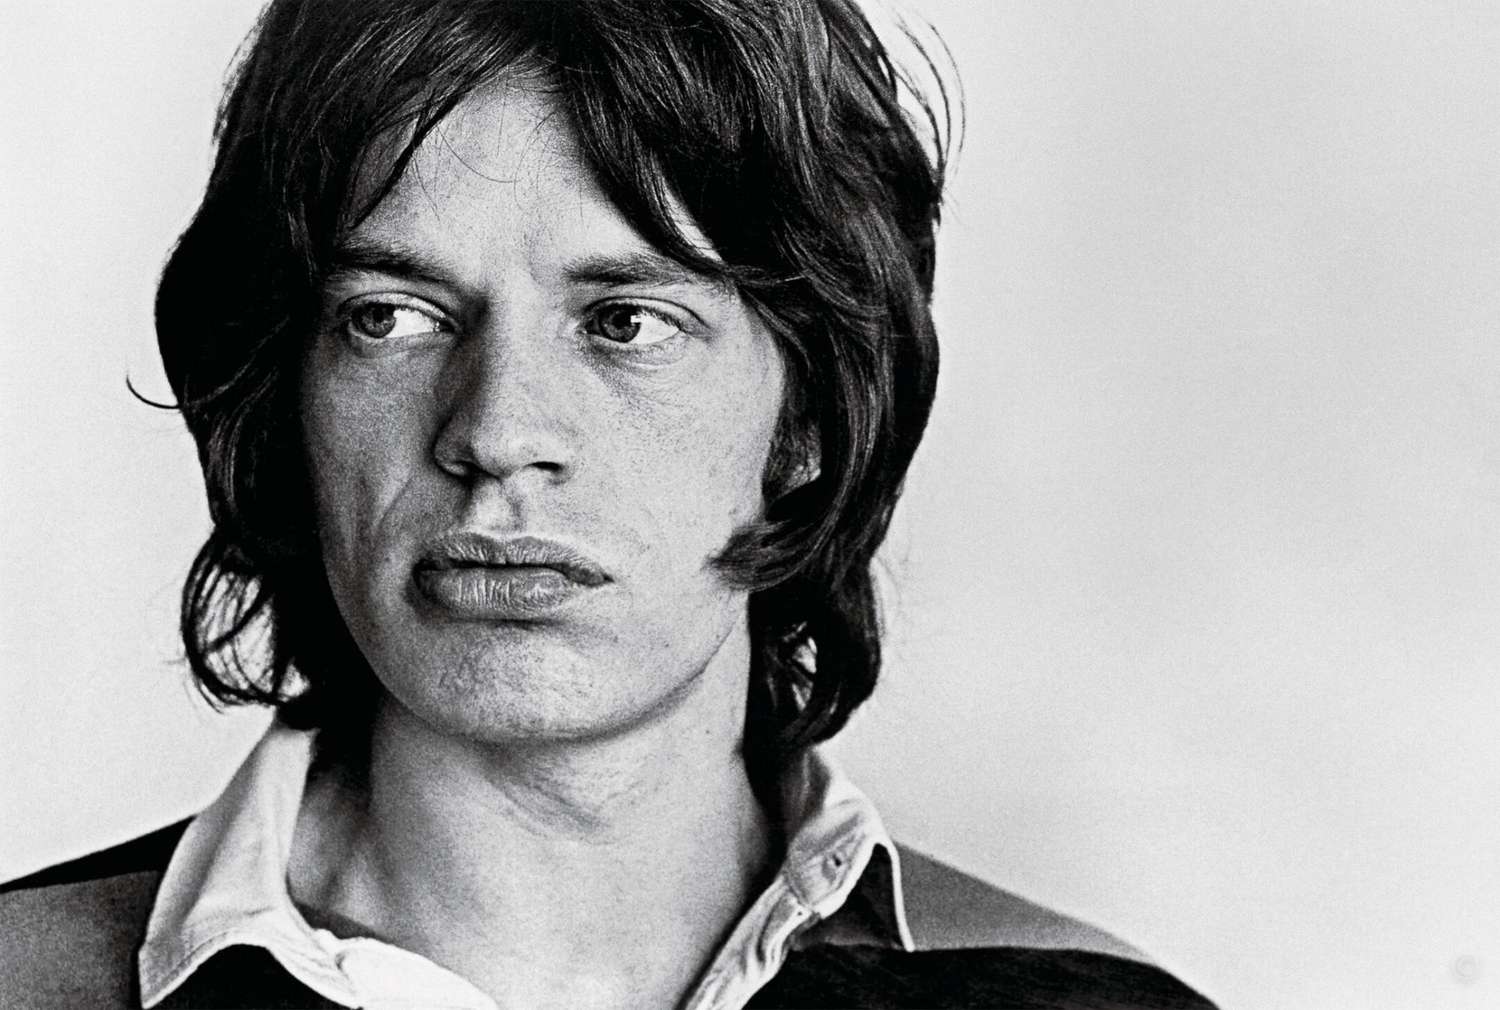 Mick Jagger, 1968